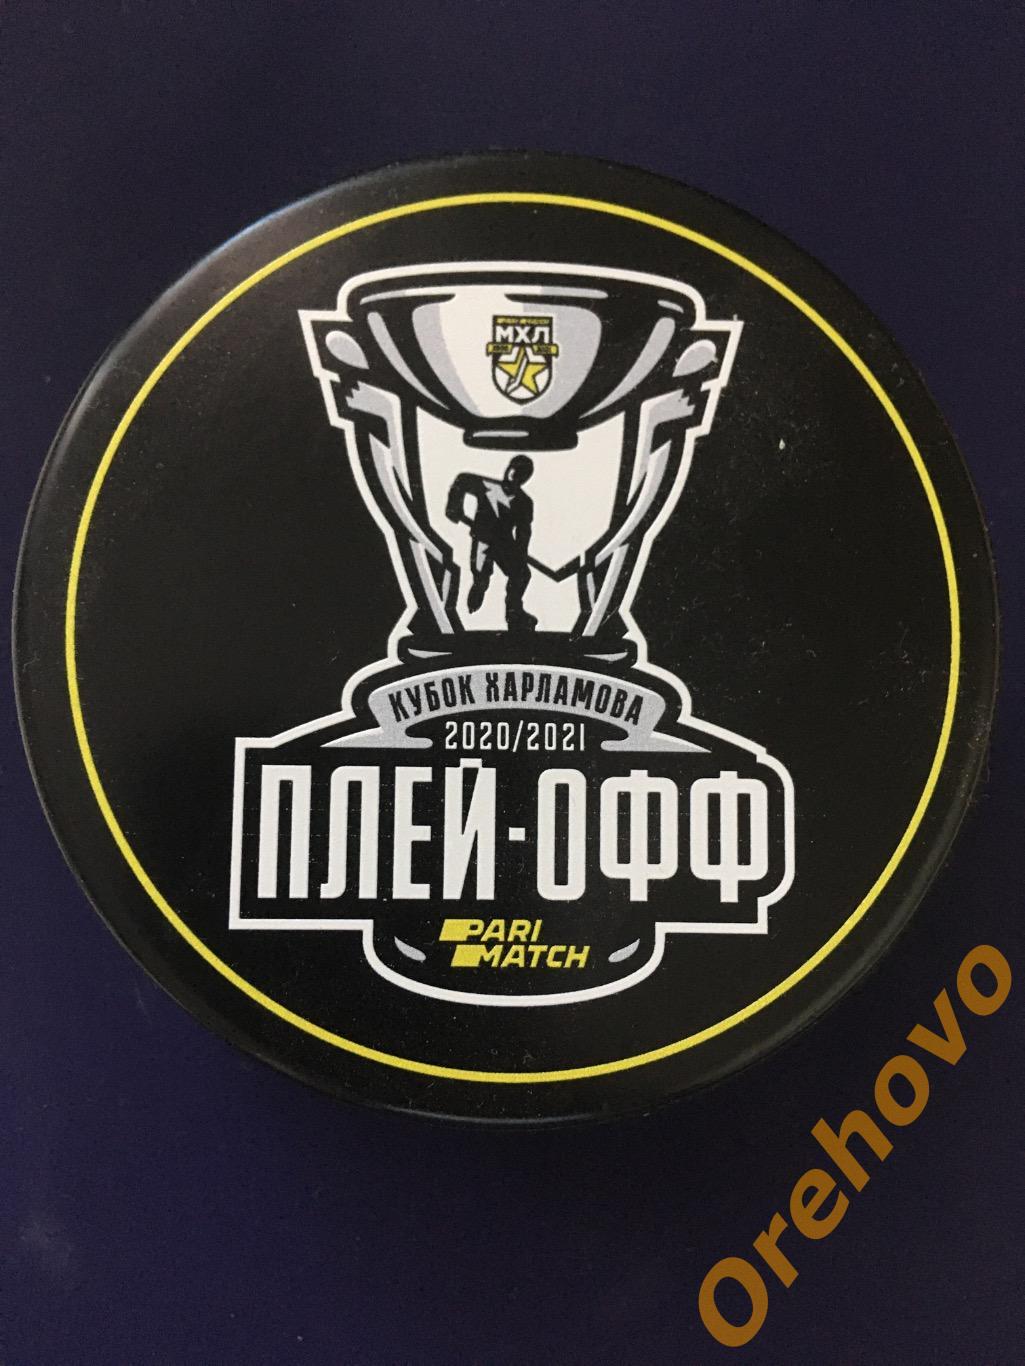 Шайба хоккейная МХЛ Кубок Харламова 2020-2021 плей-офф (сувенир)